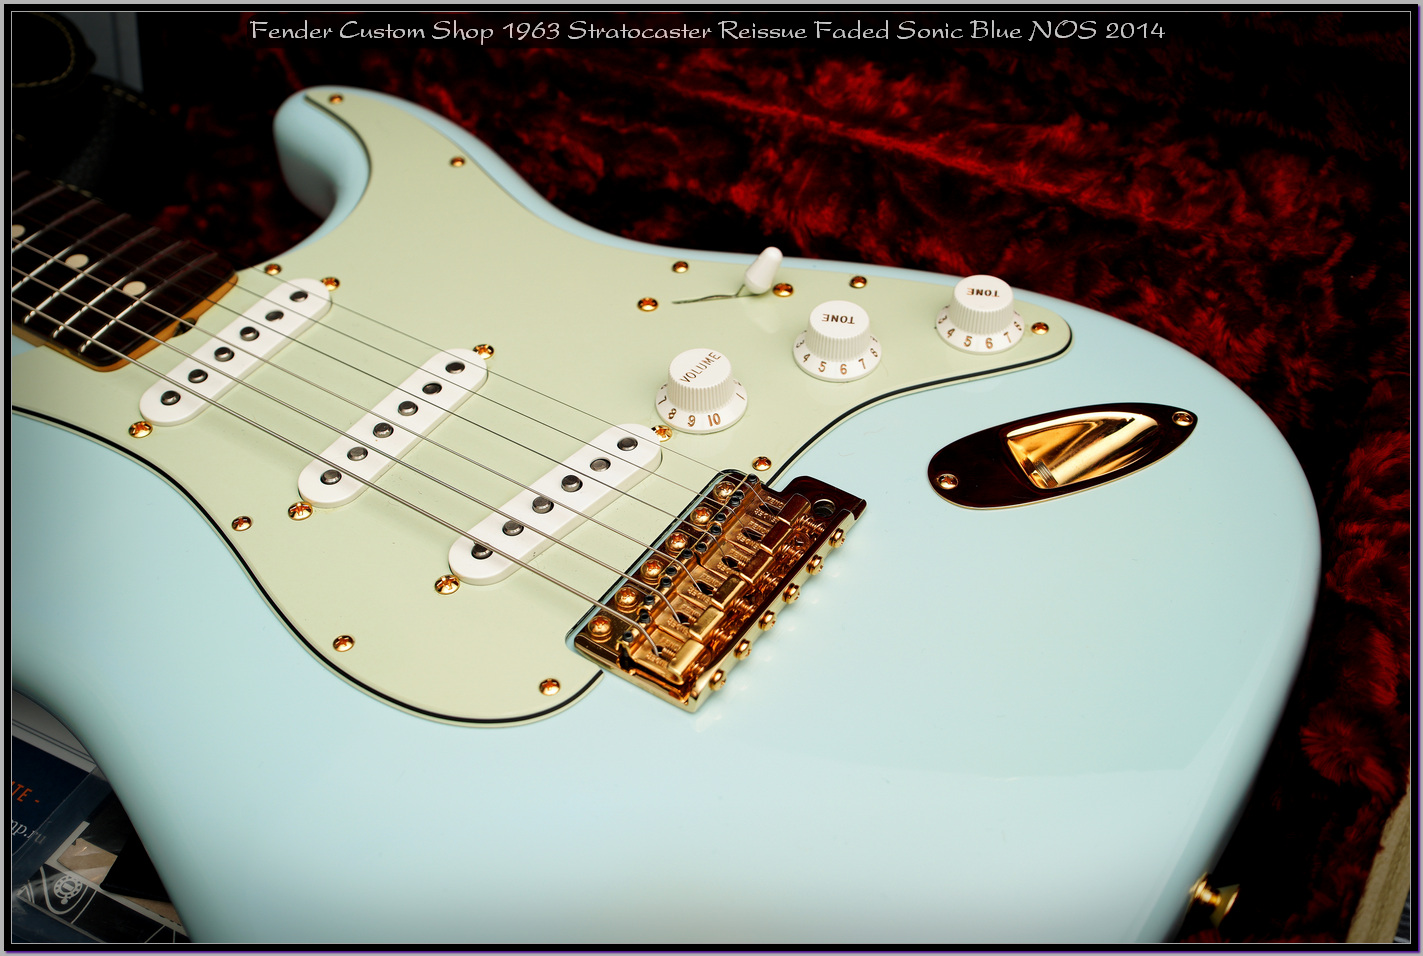 Fender Custom Shop 1963 Stratocaster Reissue Faded Sonic Blue NOS 2014 14_x1400.jpg